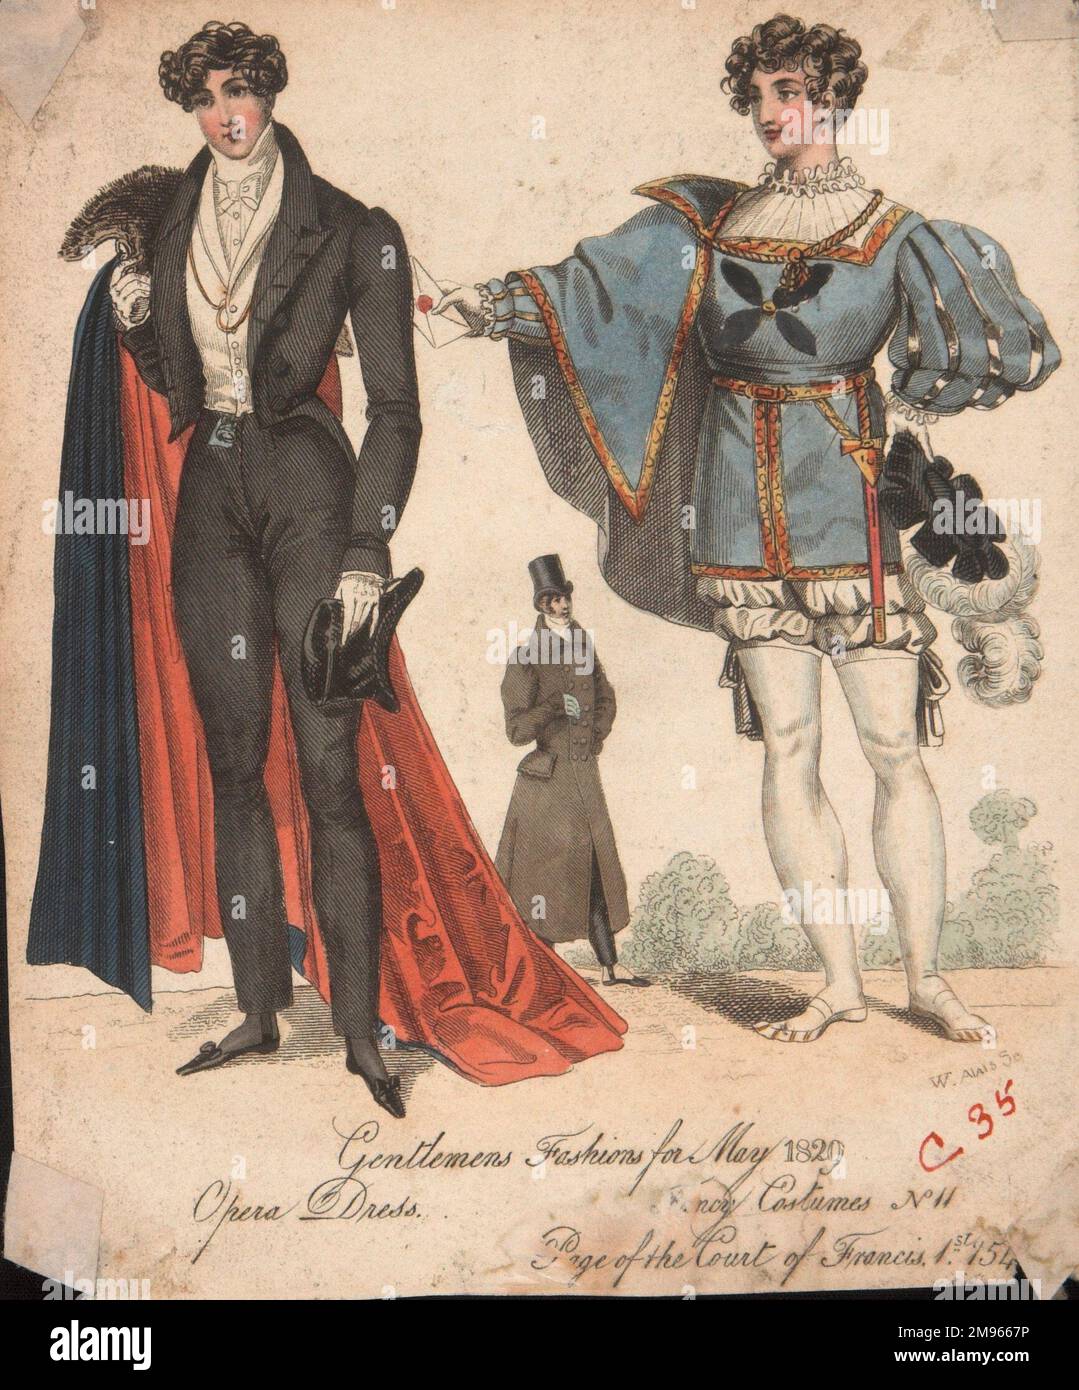 19th century mens fashion